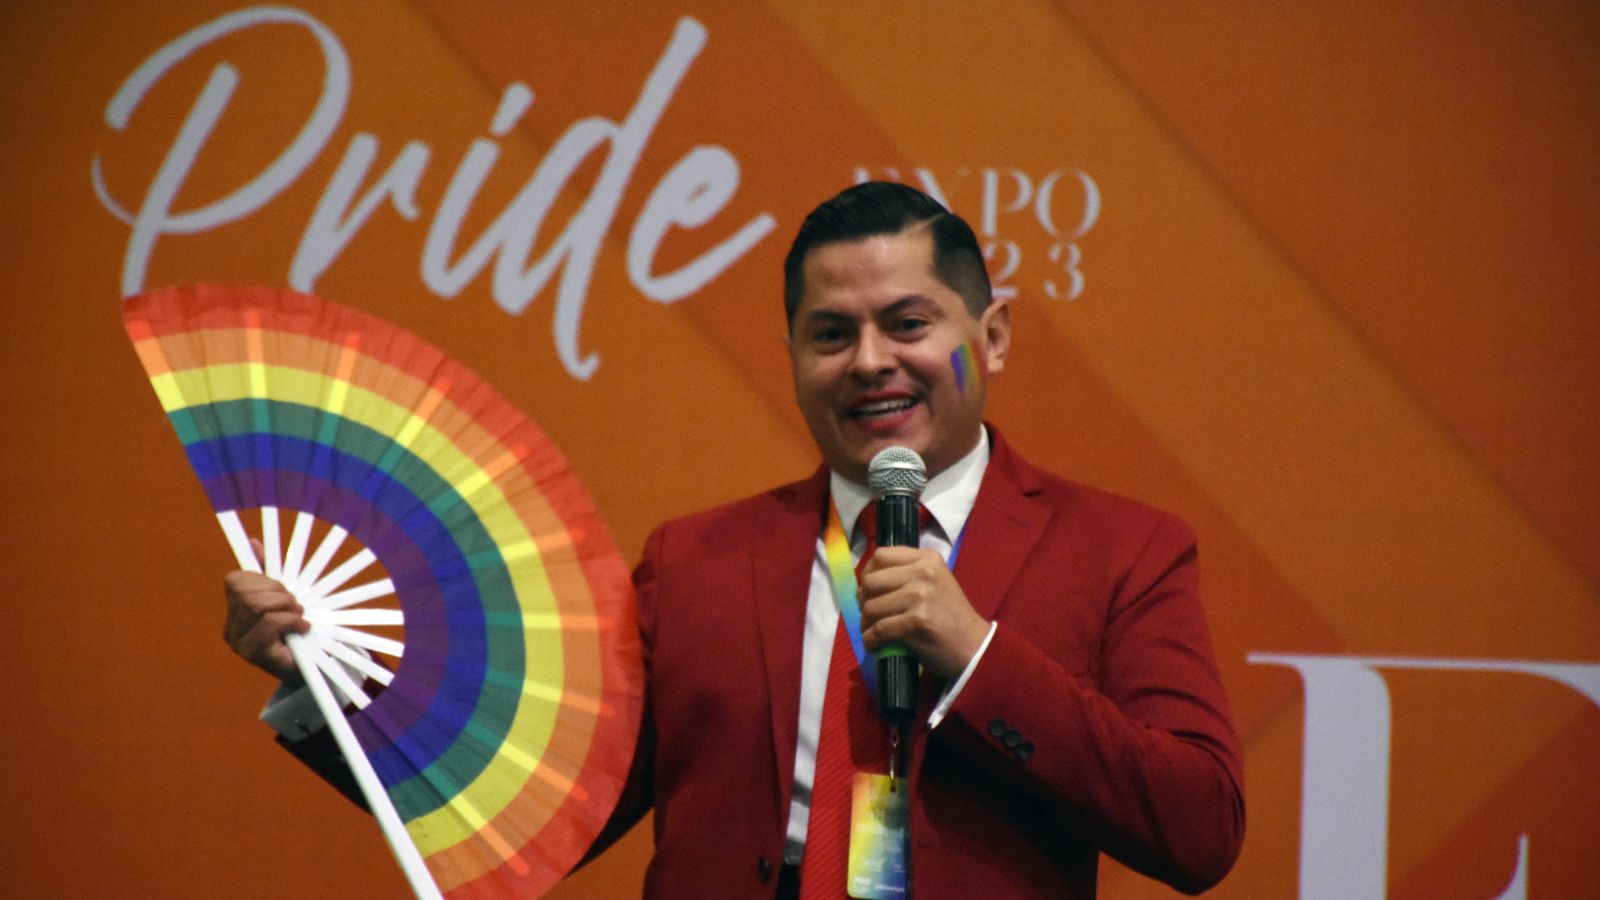 Pride Expo 2023: Celebrando la diversidad y la inclusión